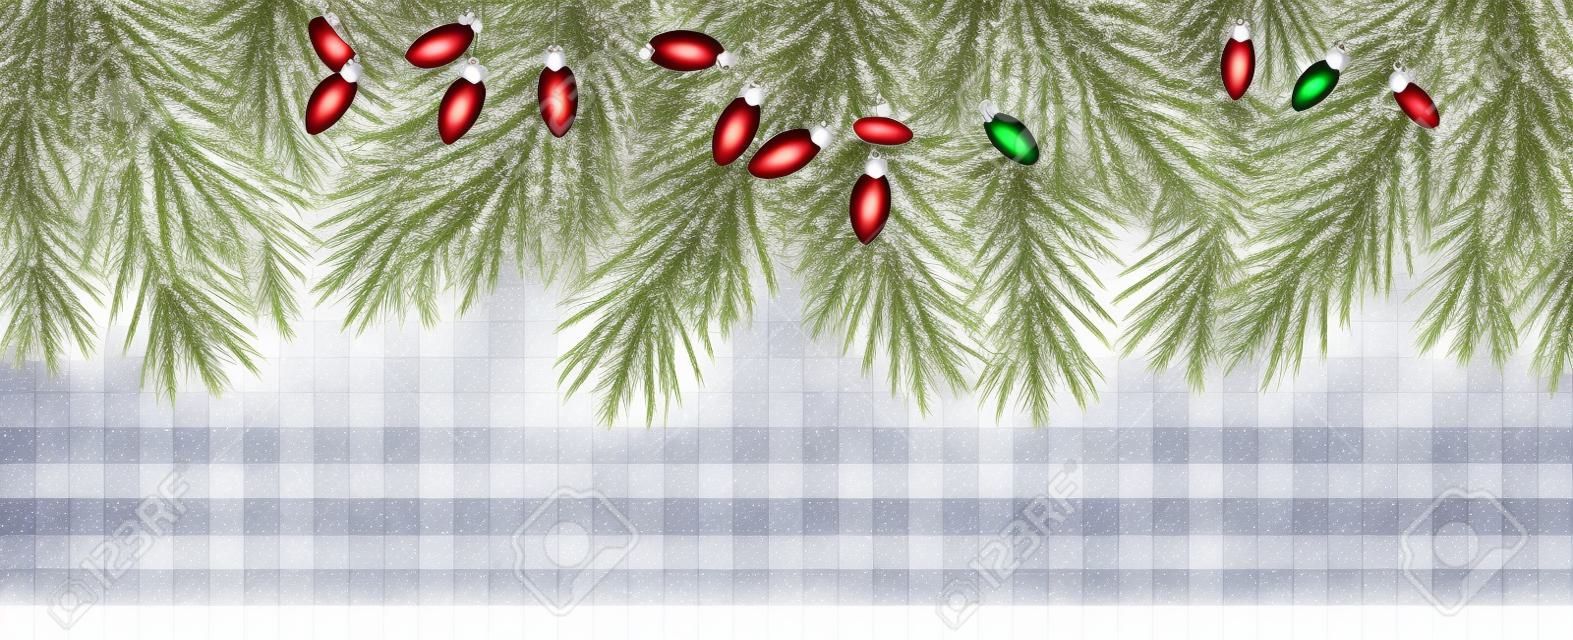 투명 배경에 전나무 지점과 소나무 콘 크리스마스 테두리